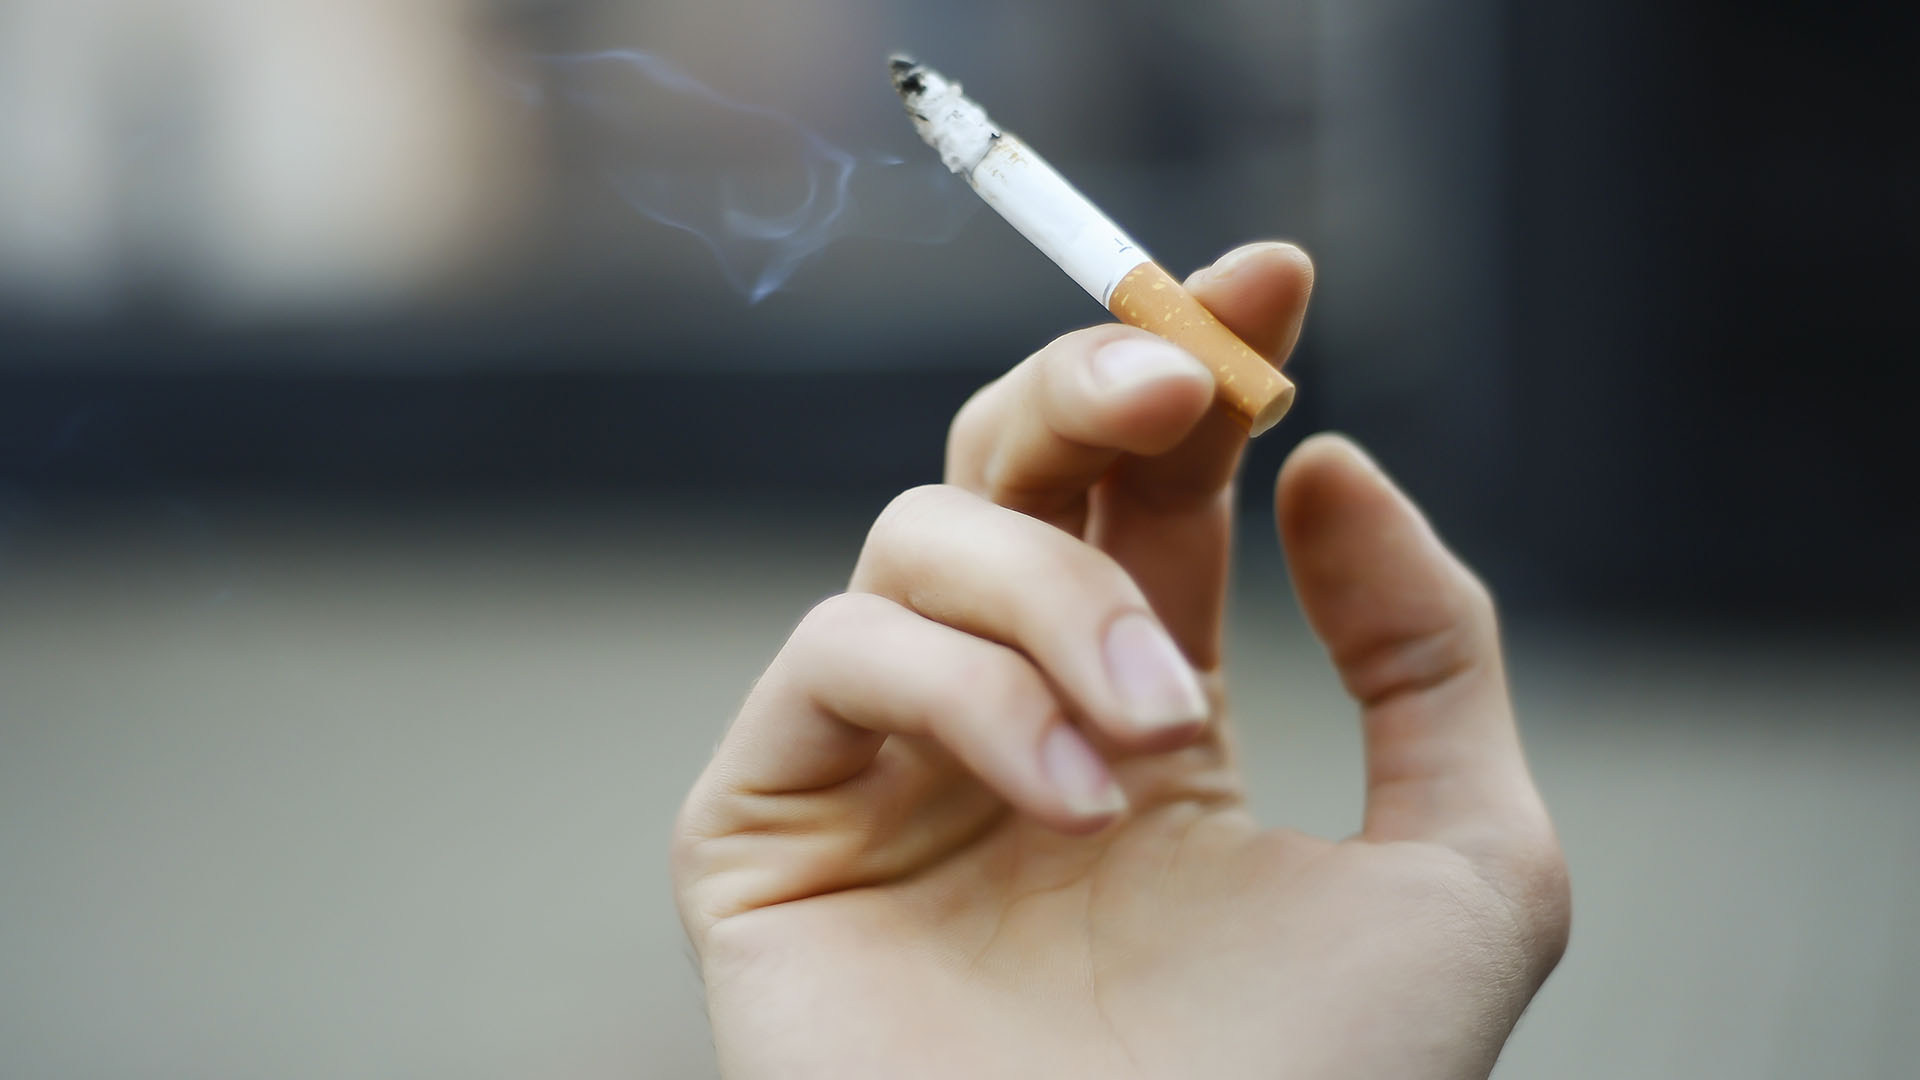 Una tabacalera fue condenada a indemnizar con cinco millones de pesos a un hombre
